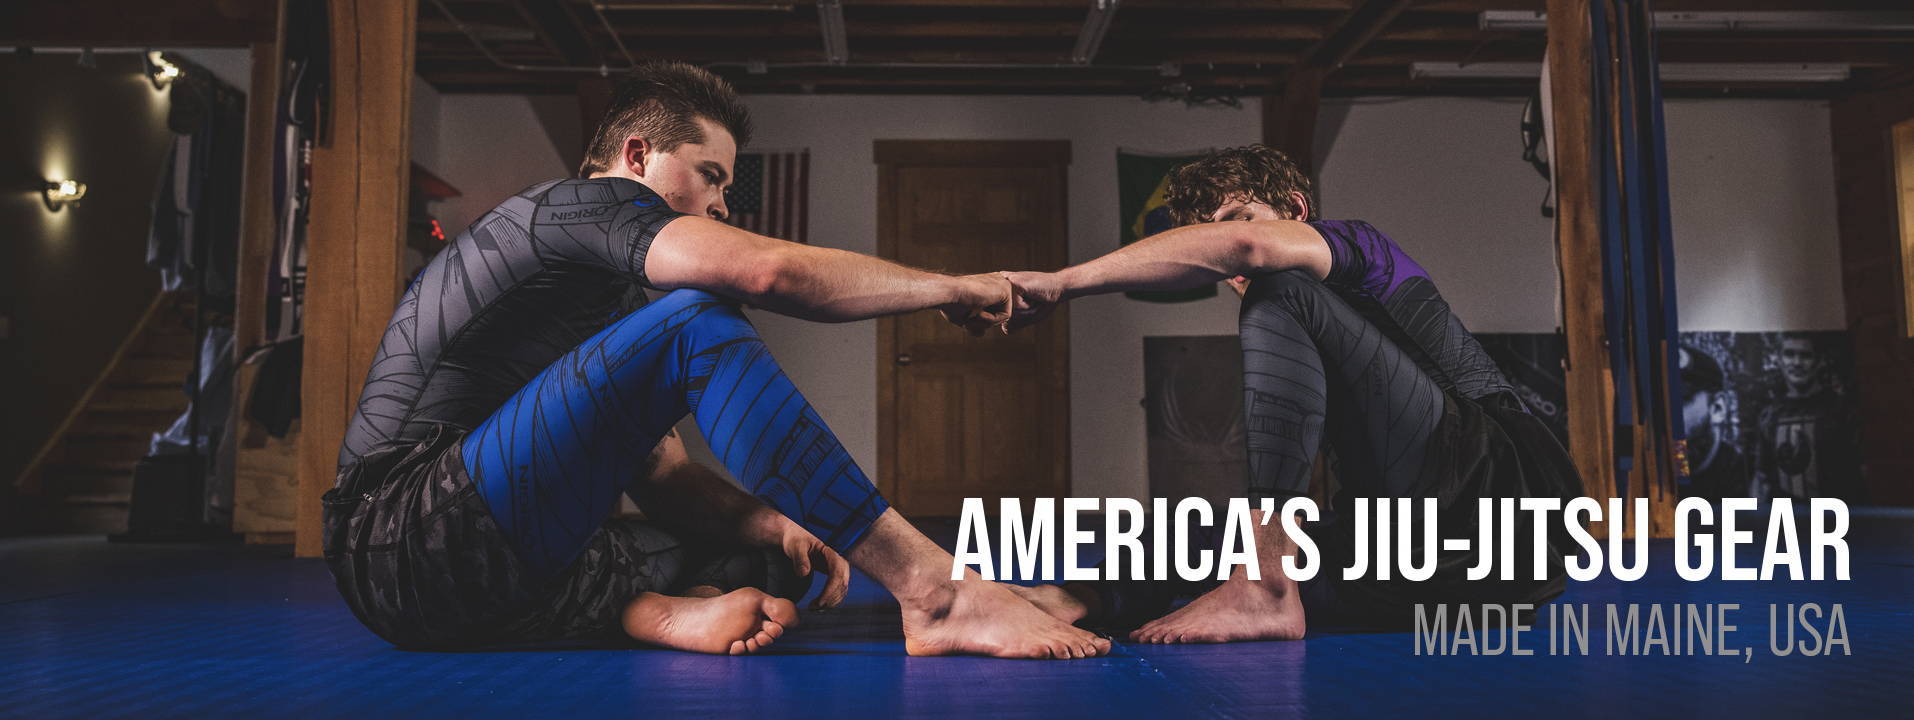 America's Jiu-Jitsu Gear